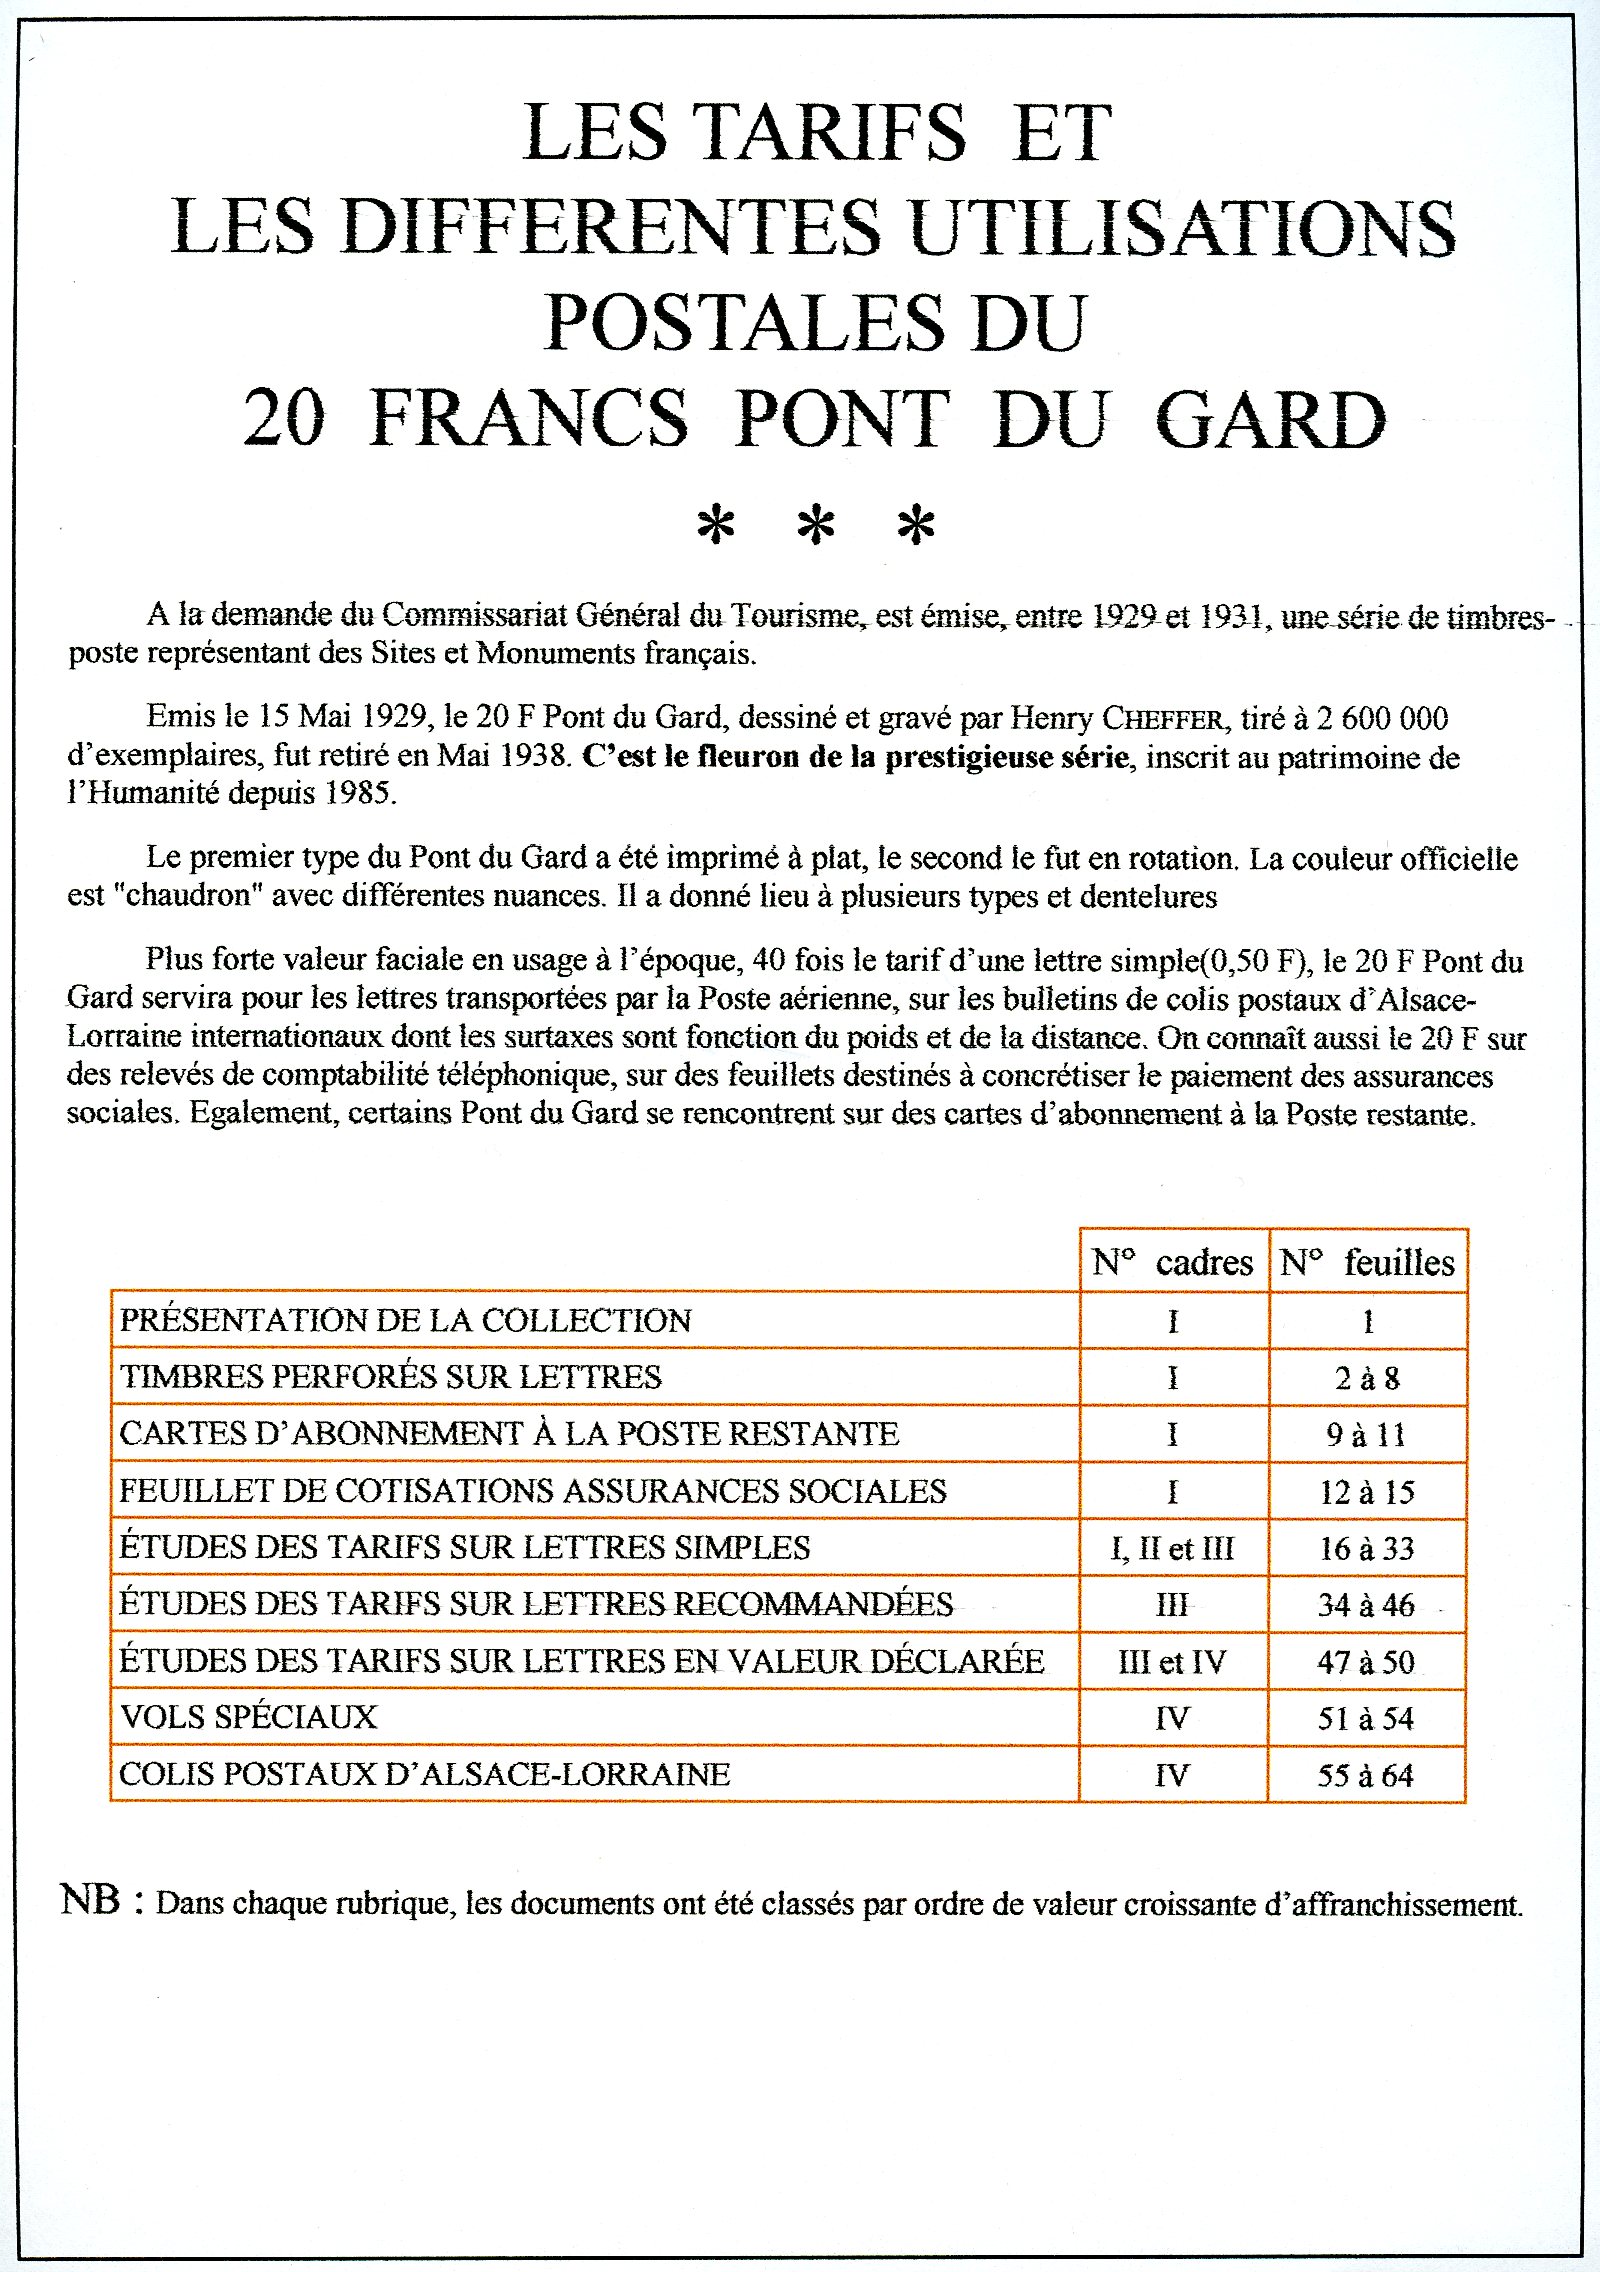 Les tarifs et les diff��rentes utilisations postales du 20 F. Pont du Gard p. 1